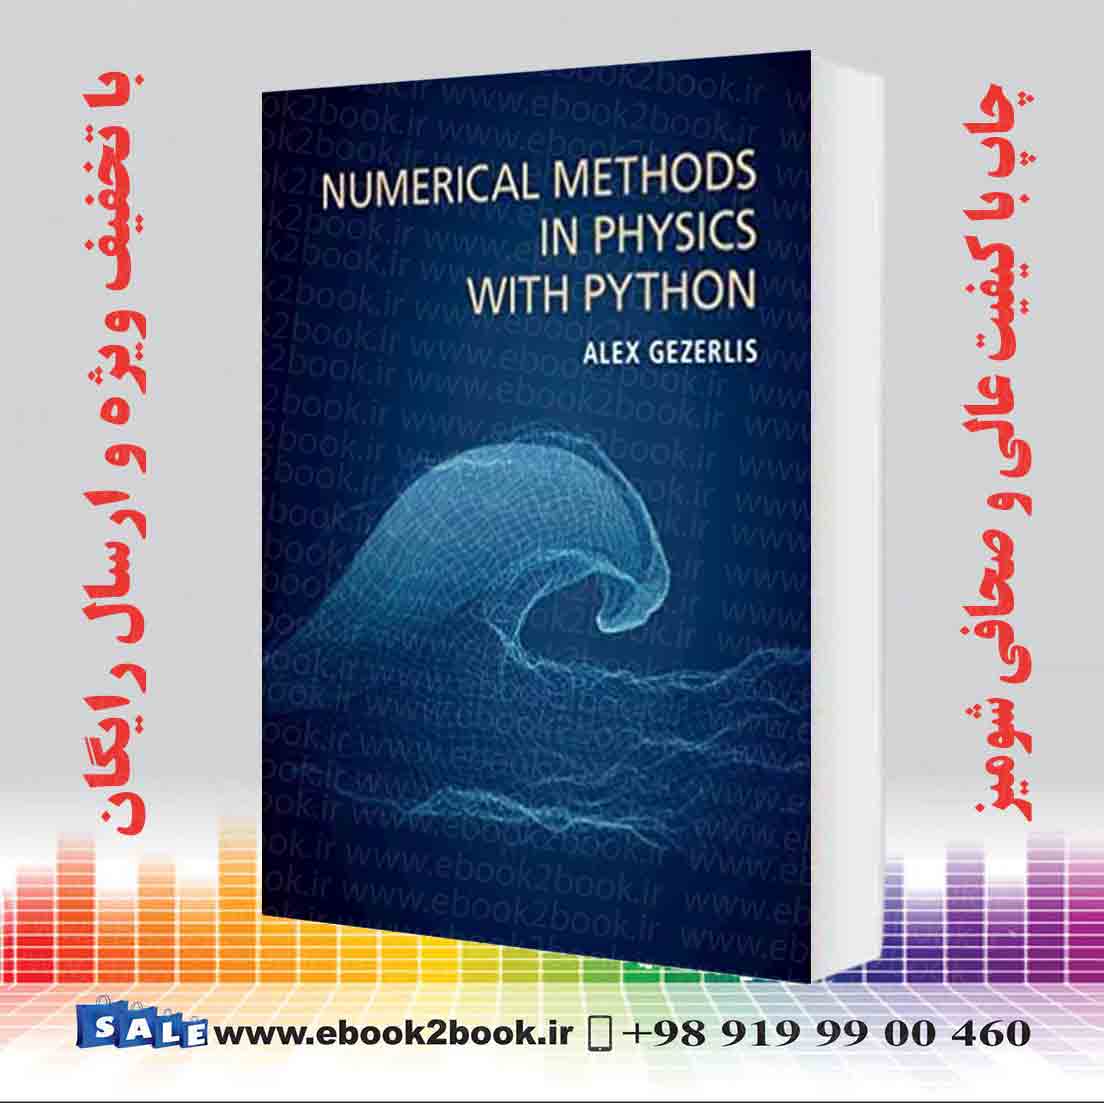 خرید کتاب Numerical Methods In Physics With Python فروشگاه کتاب ایبوک تو بوک 1035